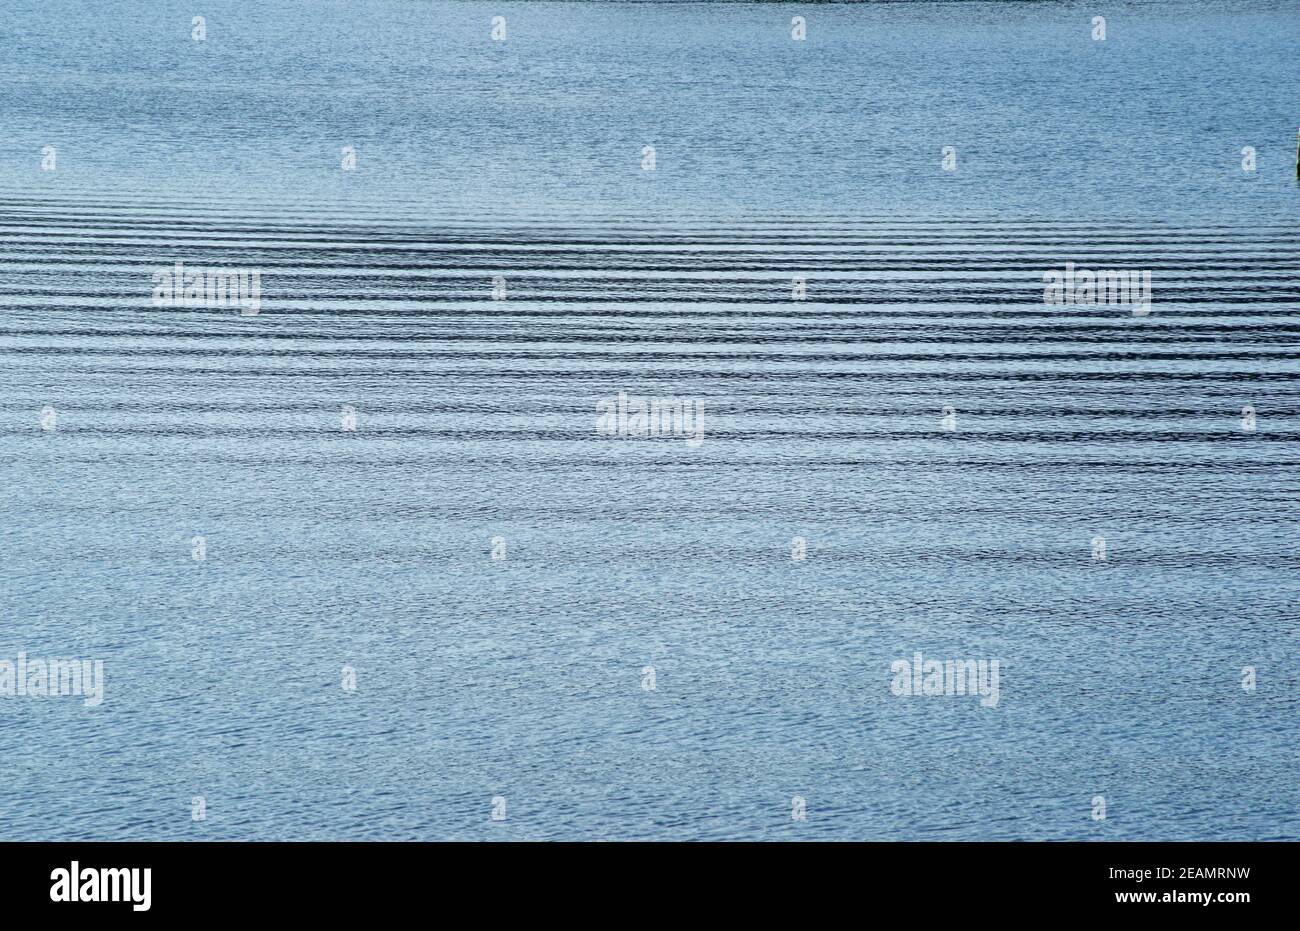 increspature orizzontali sulla tranquilla superficie blu dell'acqua Foto Stock